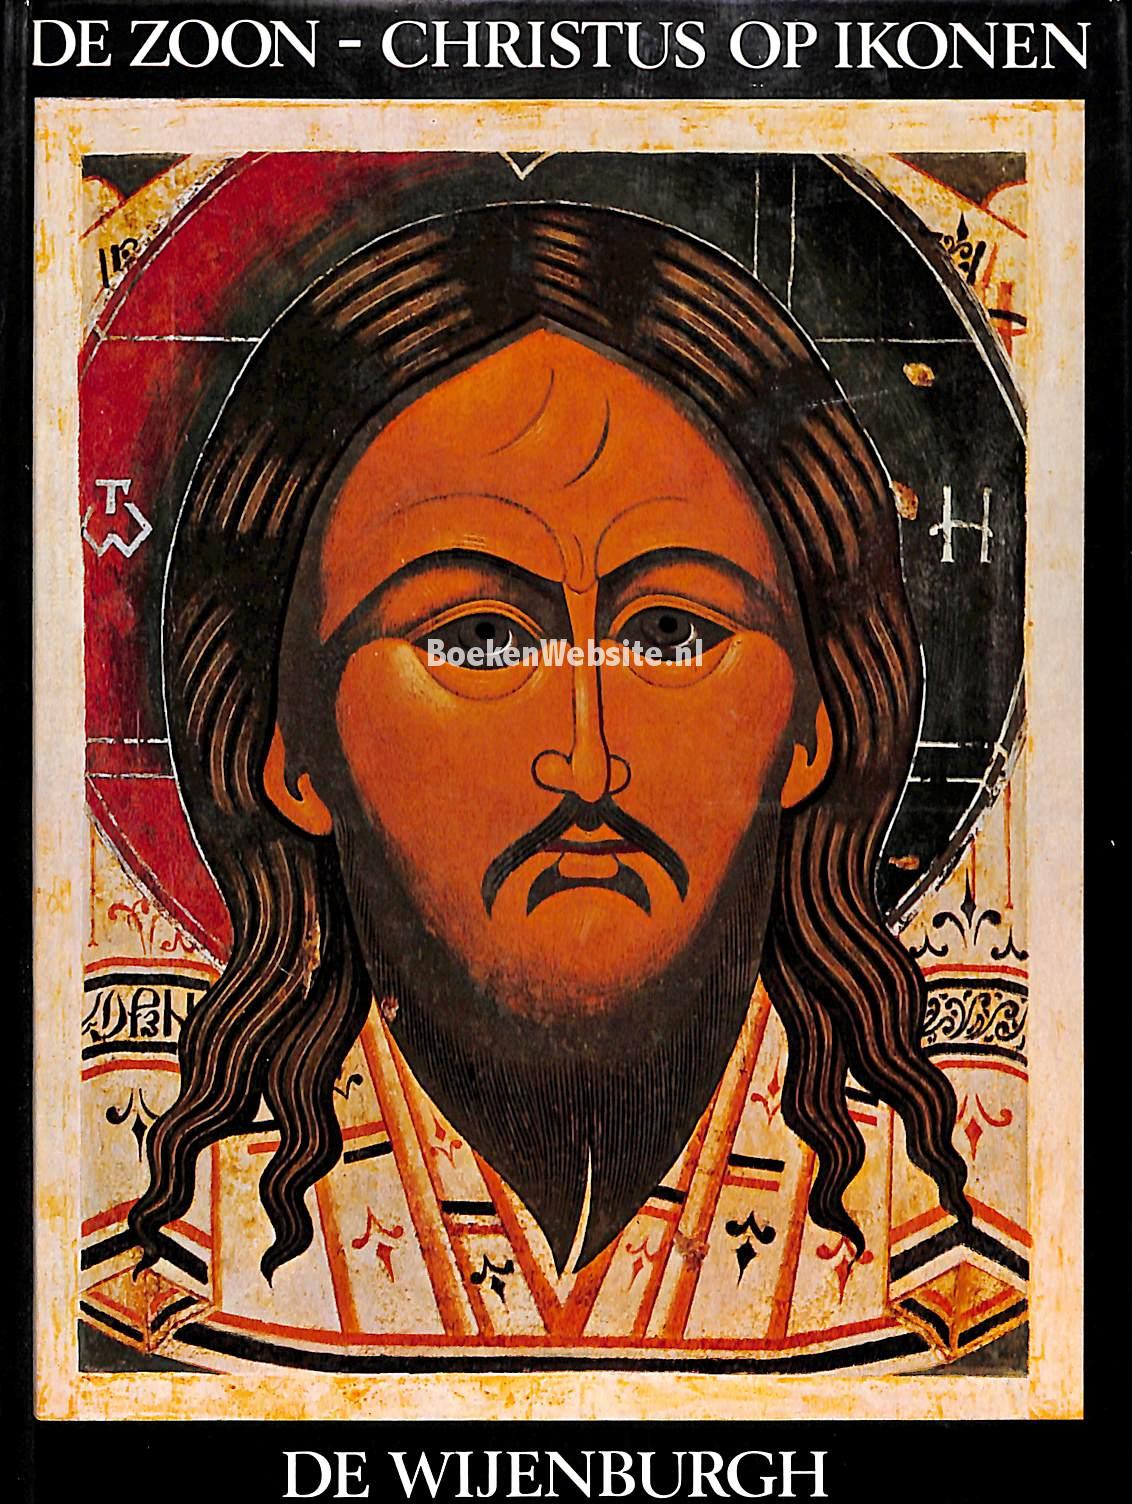 De zoon - Christus op Ikonen